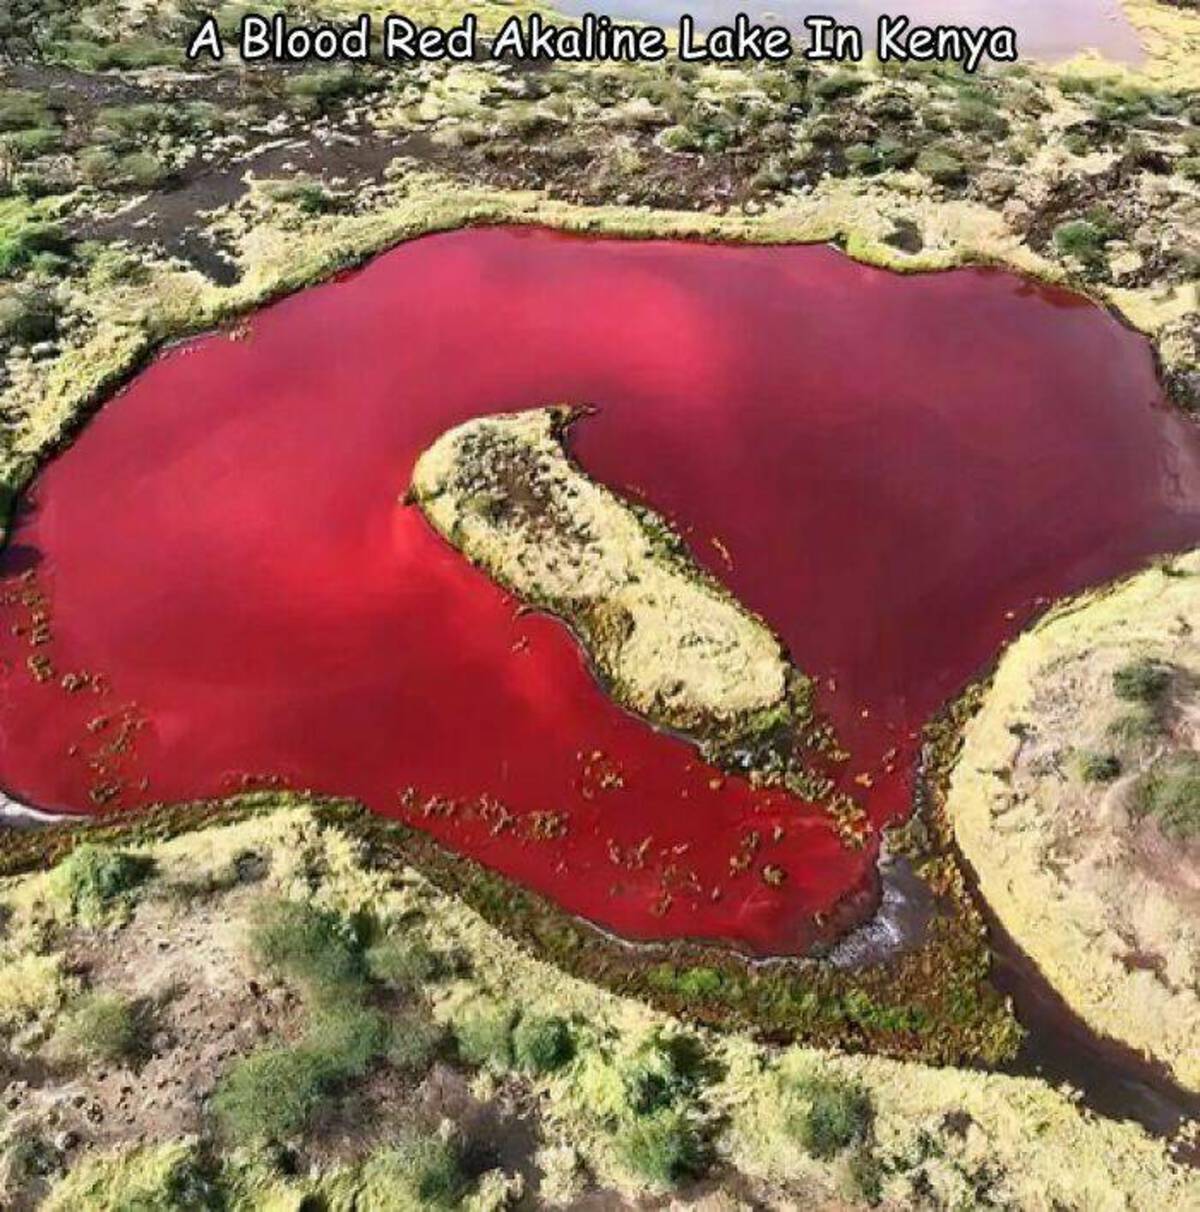 alkaline lake - A Blood Red Akaline Lake In Kenya